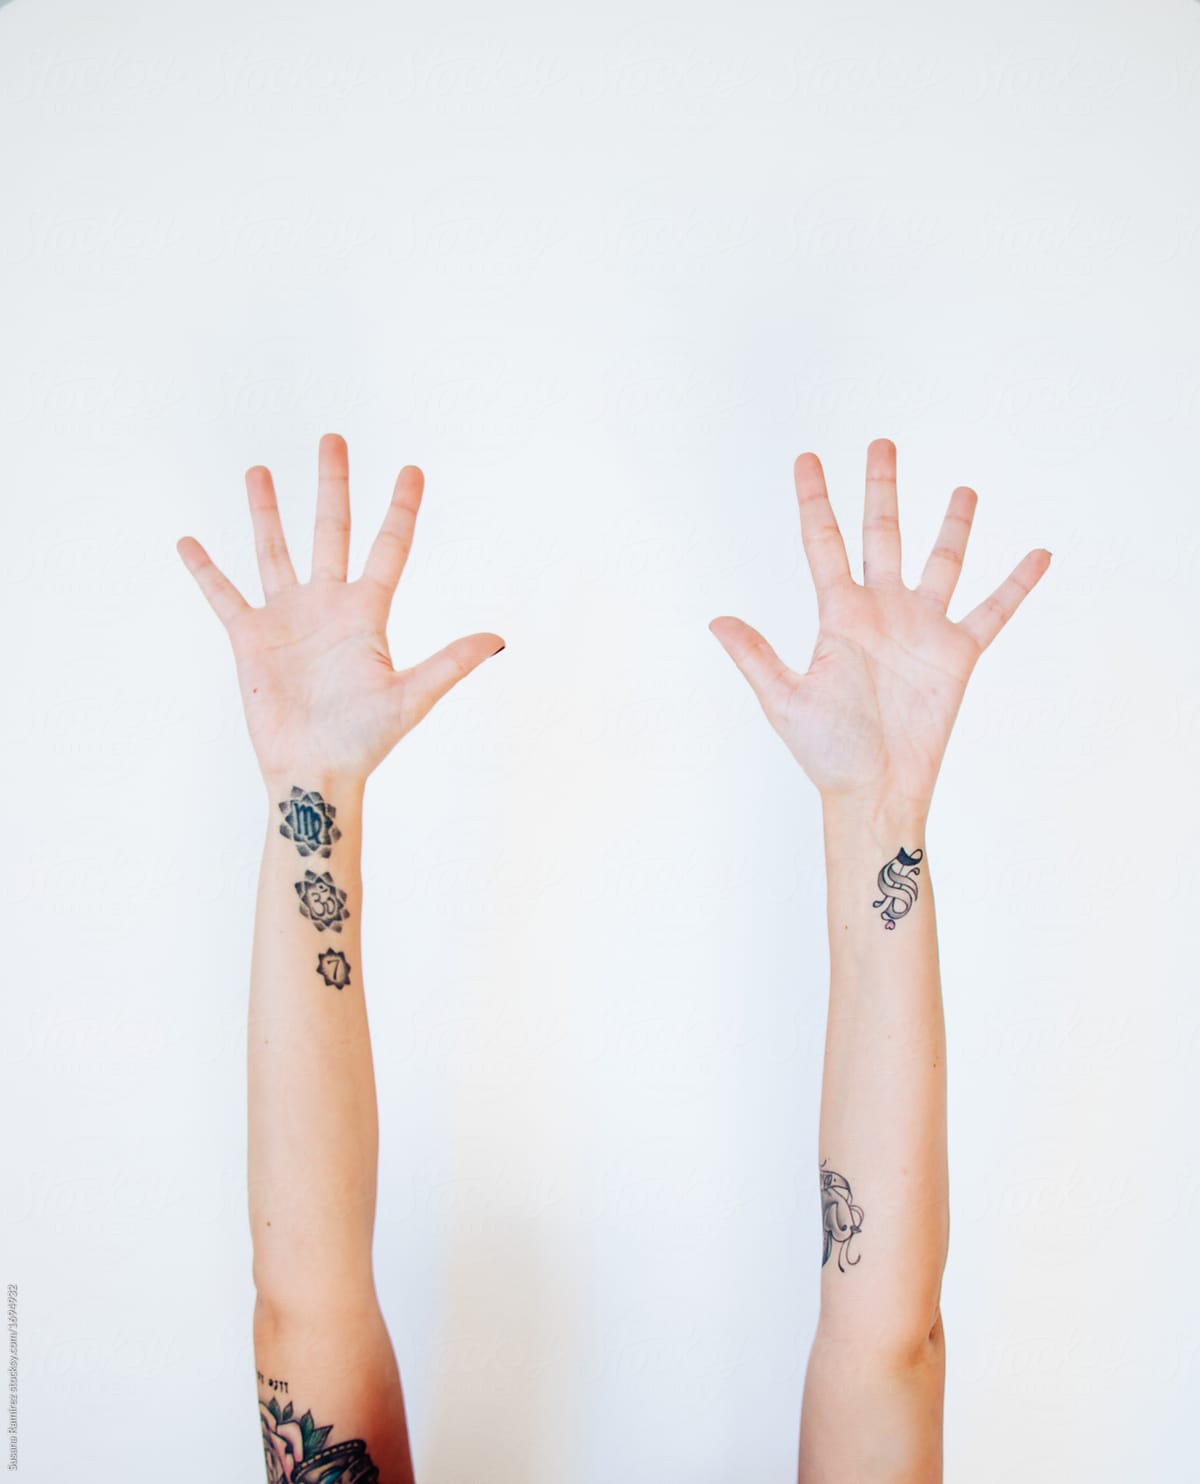 Tattooed Arms Of Woman by Stocksy Contributor Susana Ramírez - Stocksy